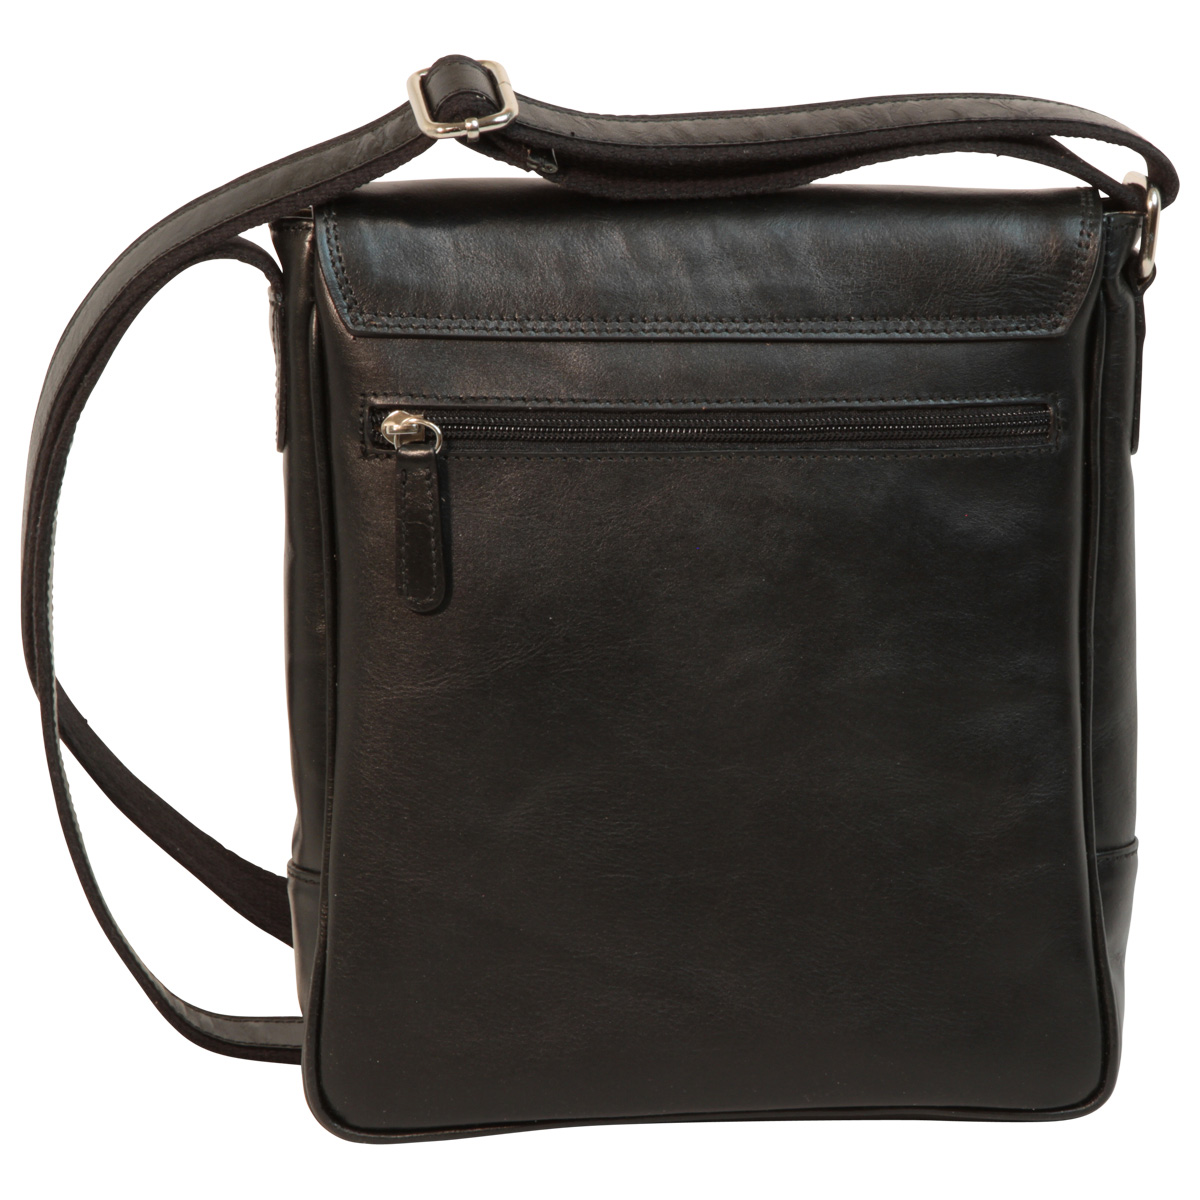 Leather I-Pad bag - Black | 087361NE US | Old Angler Firenze